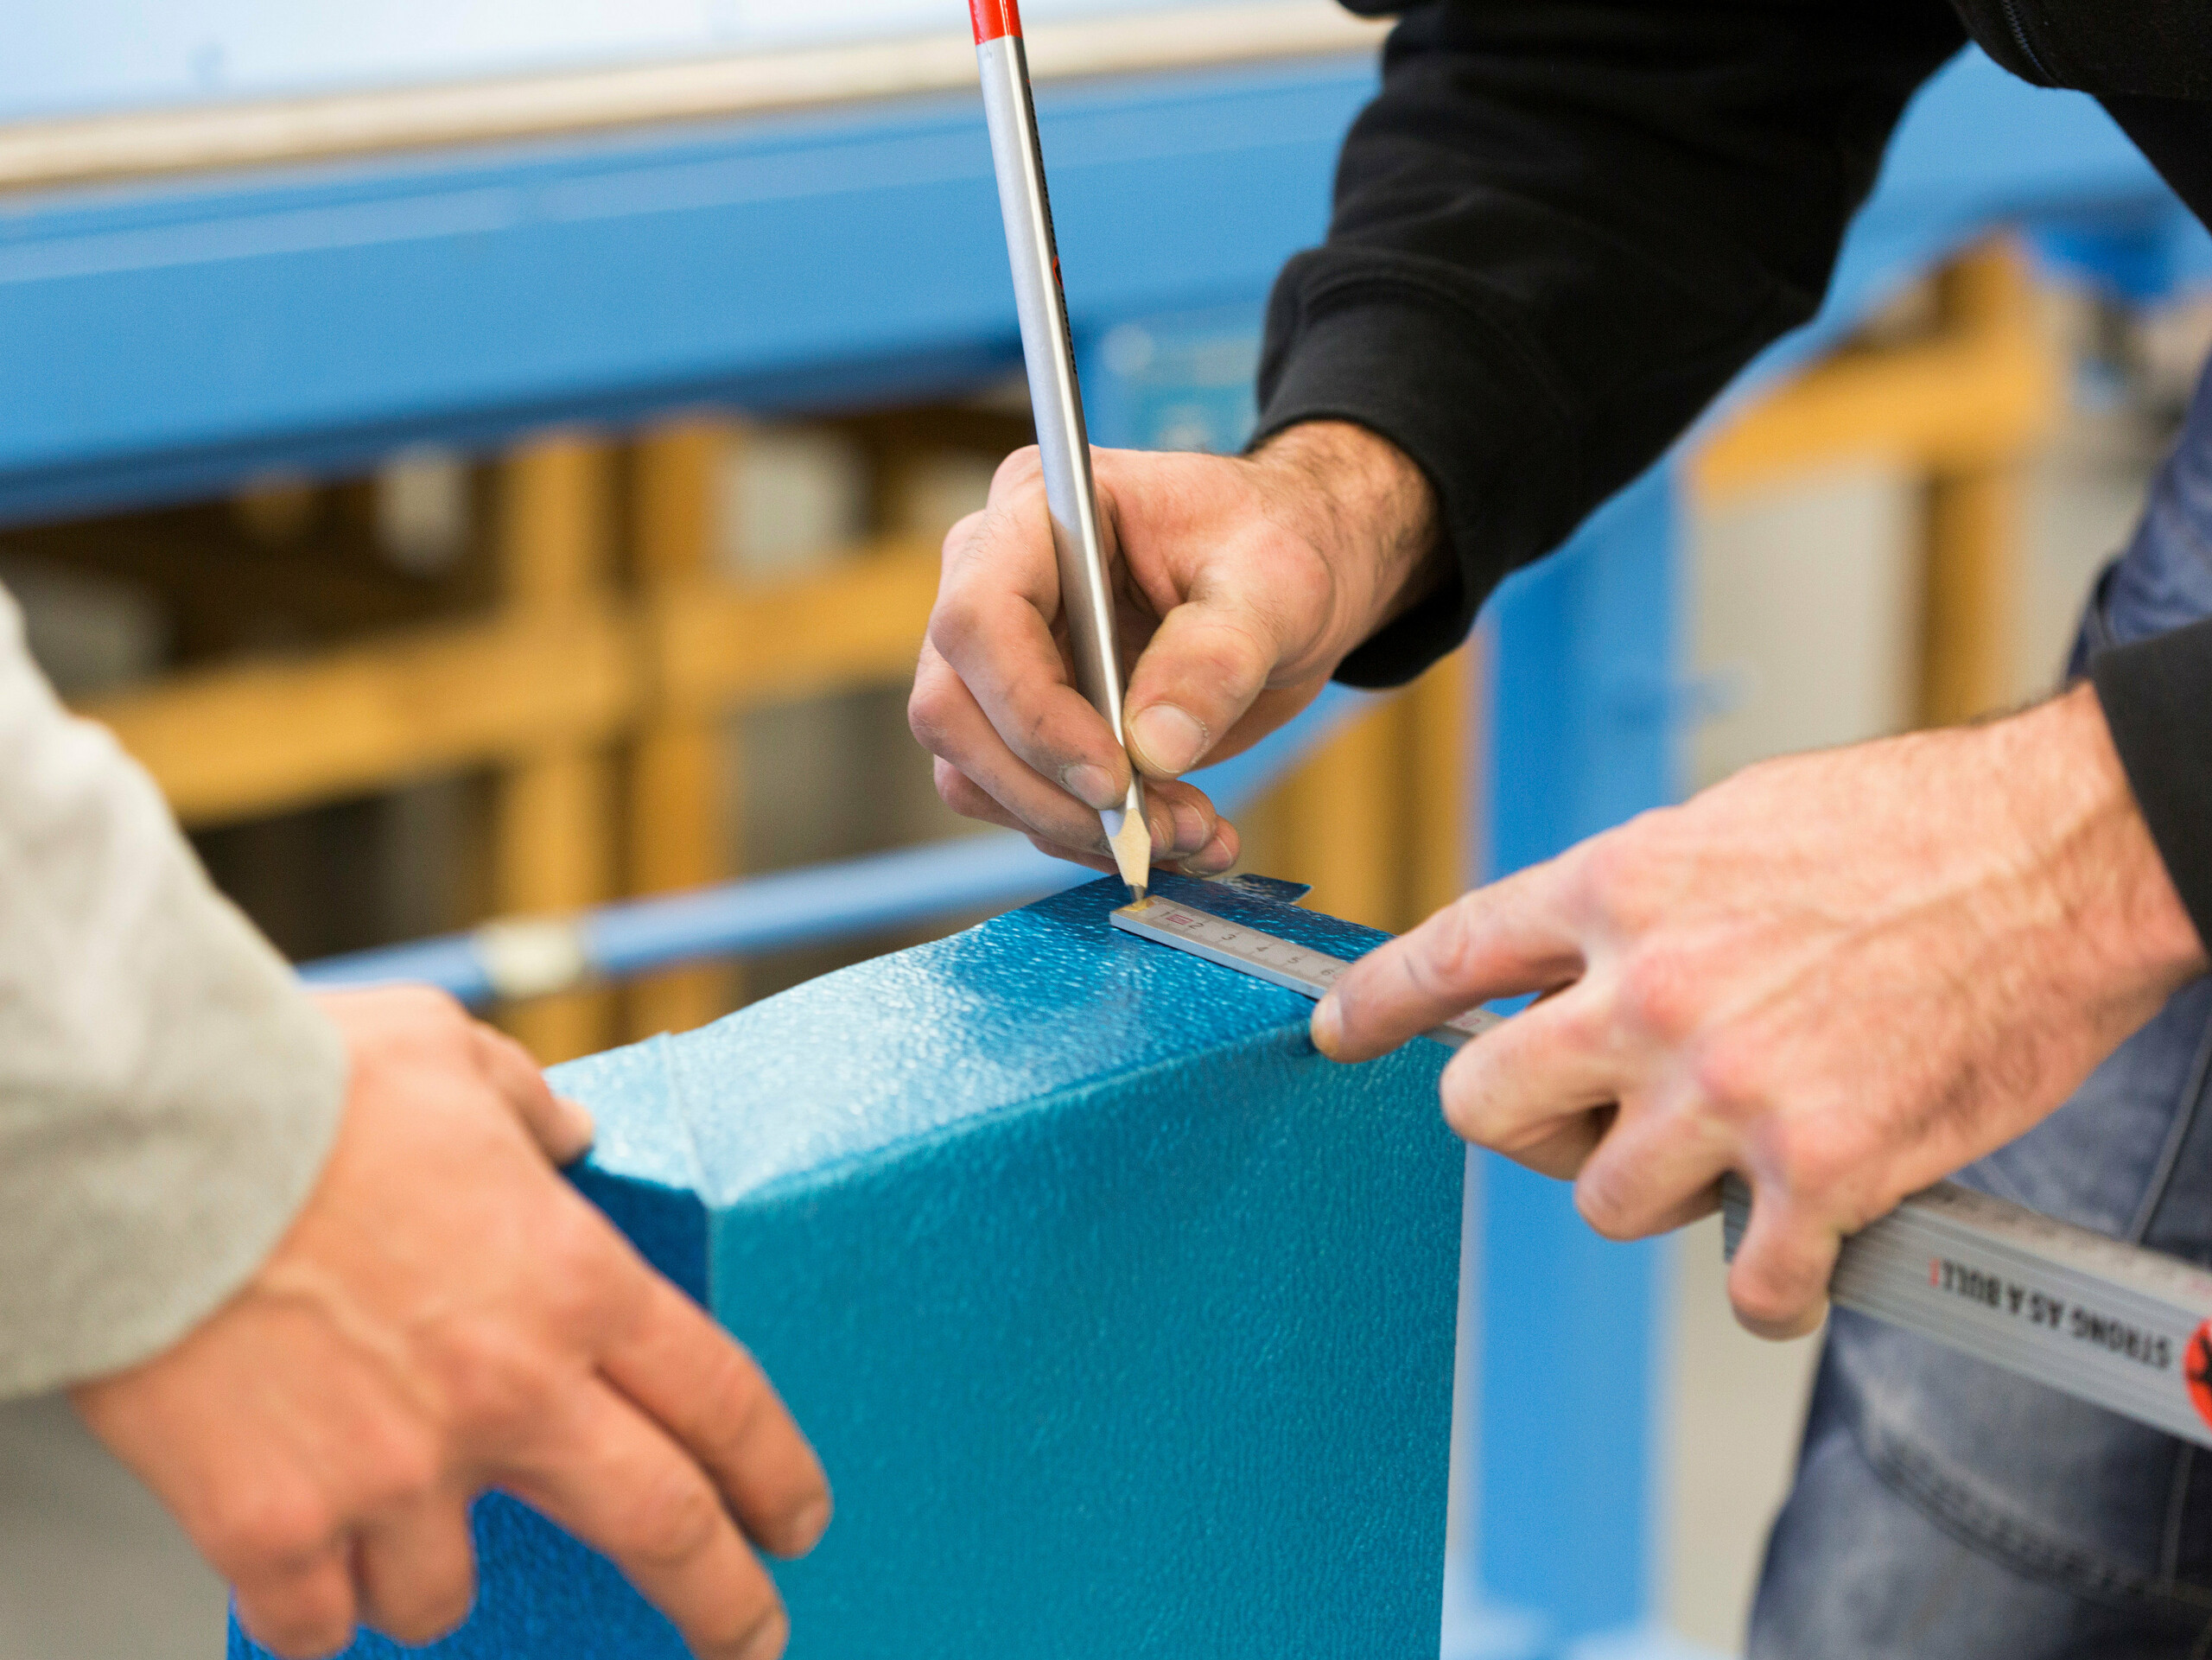 Zwei Handwerker bei der präzisen Markierung eines PREFA Produktes aus blauem Aluminium. Die Männerhände werden unterstützt durch professionelle Werkzeuge und Materialien. Der Maßstab in der Hand des zeichnenden Mannes trägt ein rotes PREFA Logo. Das Bild symbolisiert die Unterstützung von Spenglern durch die Firma PREFA. 